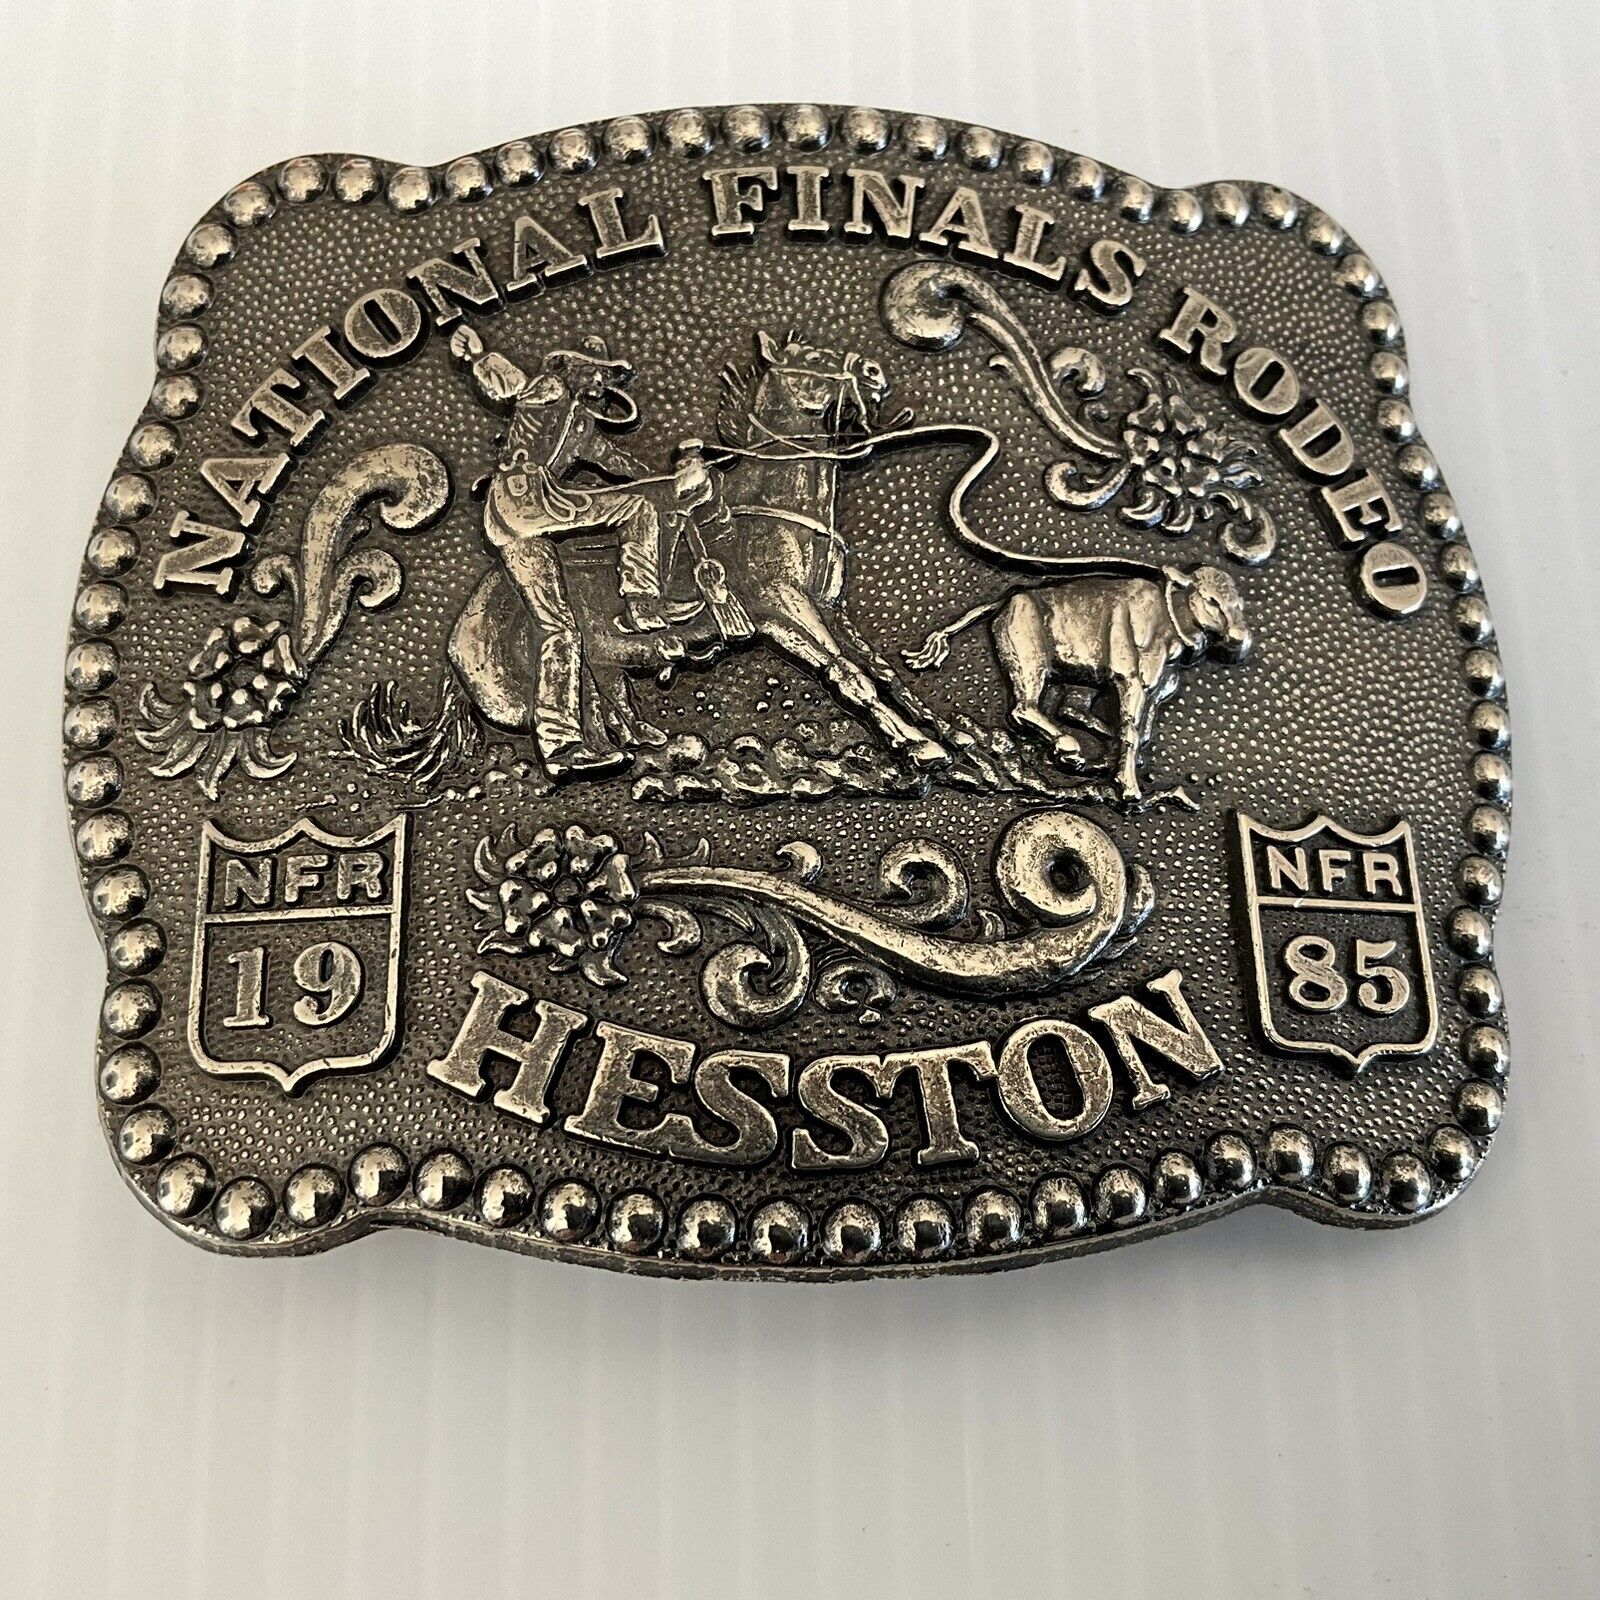 Vintage 1985 Hesston NFR Belt Buckle Limited Collectors Item 